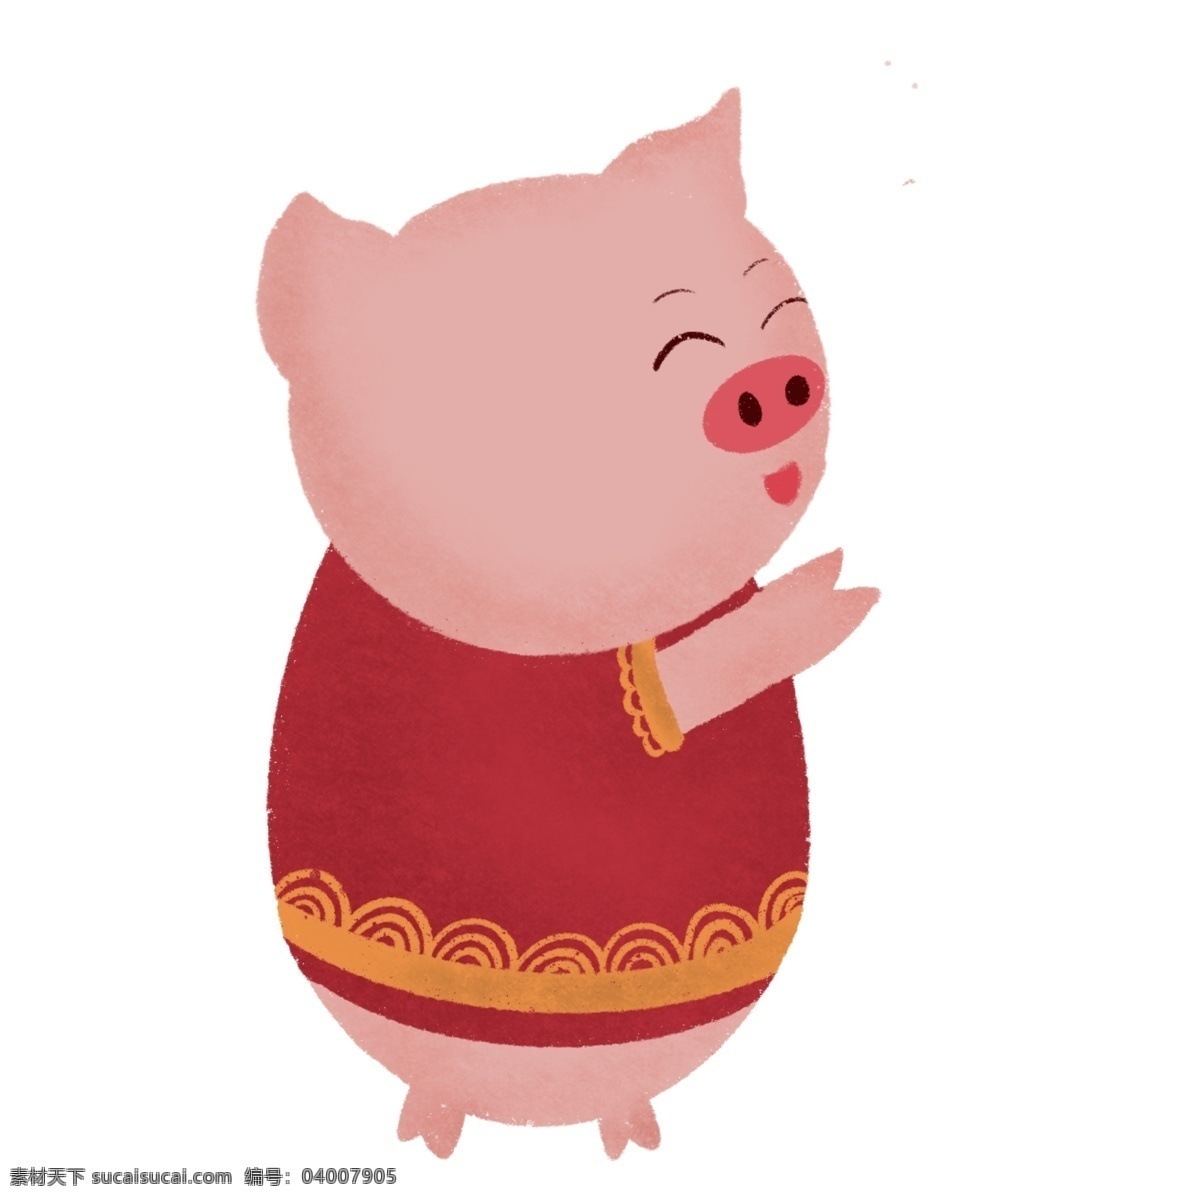 中国 风 2019 猪年 形象 元素 喜庆 红色 新年元素 小猪形象 元素装饰 装饰图案 元素设计 简约 创意元素 手绘元素 psd元素